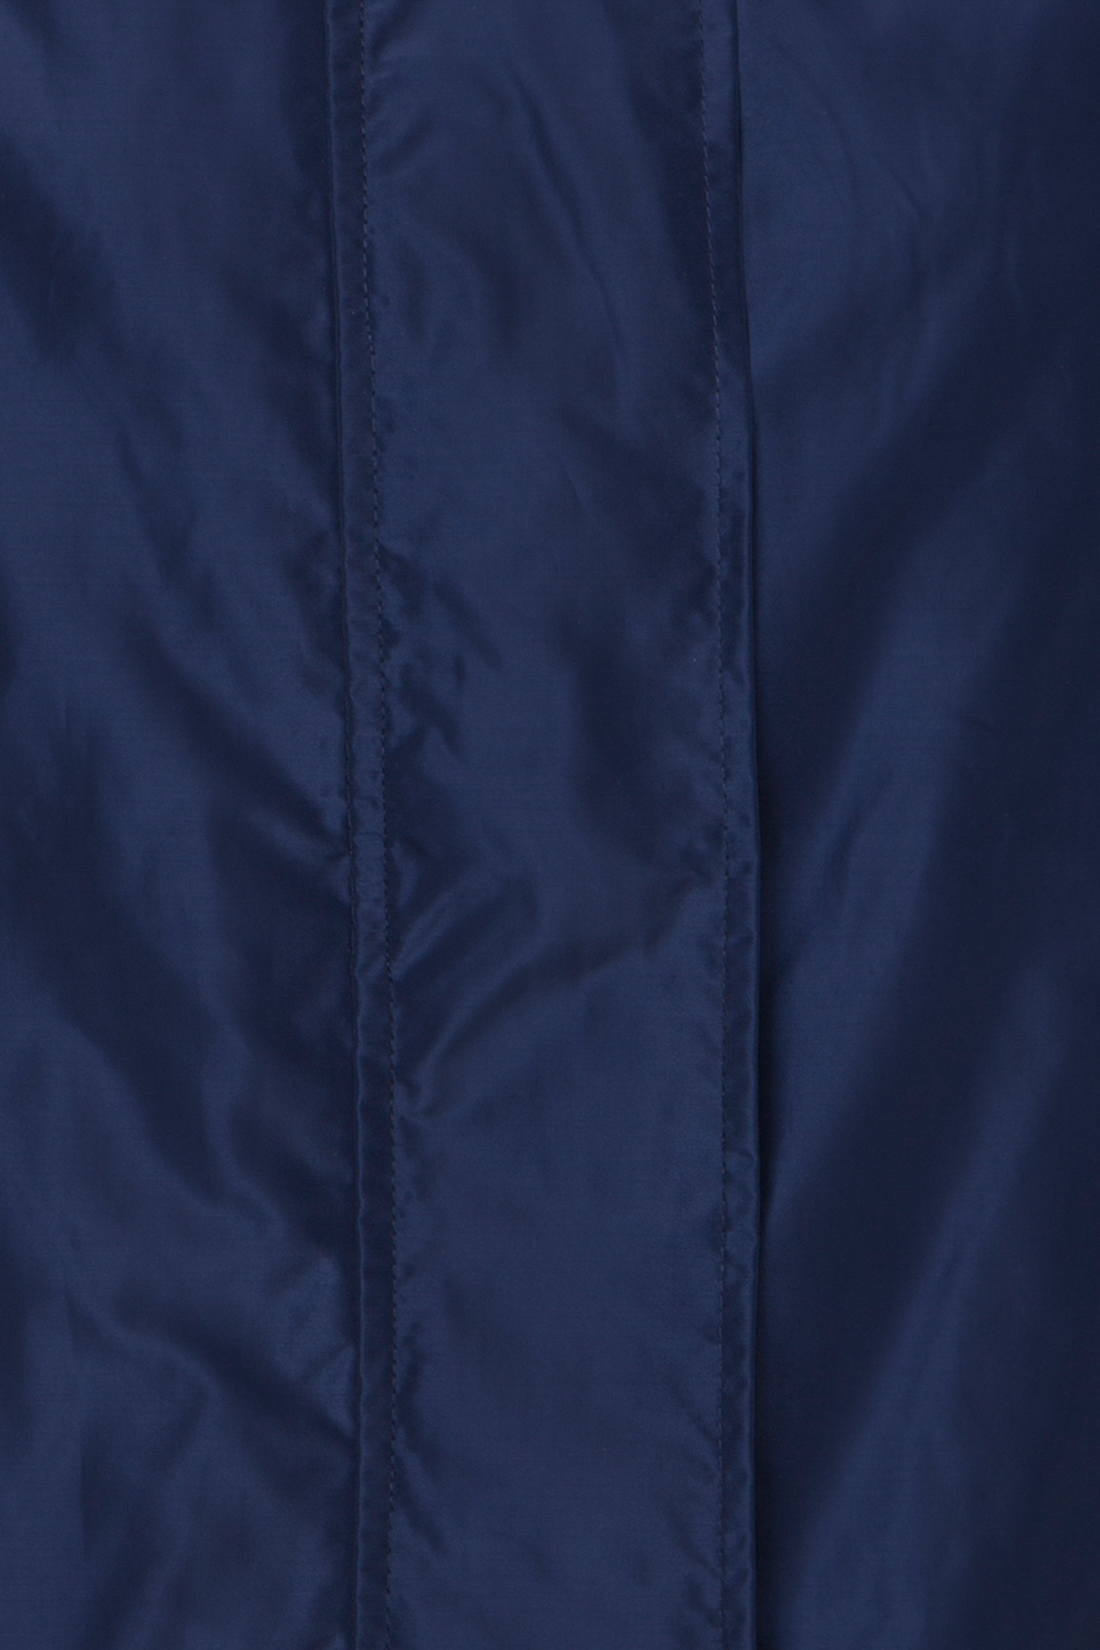 Ветровка со съёмным капюшоном (арт. baon B107006), размер M, цвет синий Ветровка со съёмным капюшоном (арт. baon B107006) - фото 3